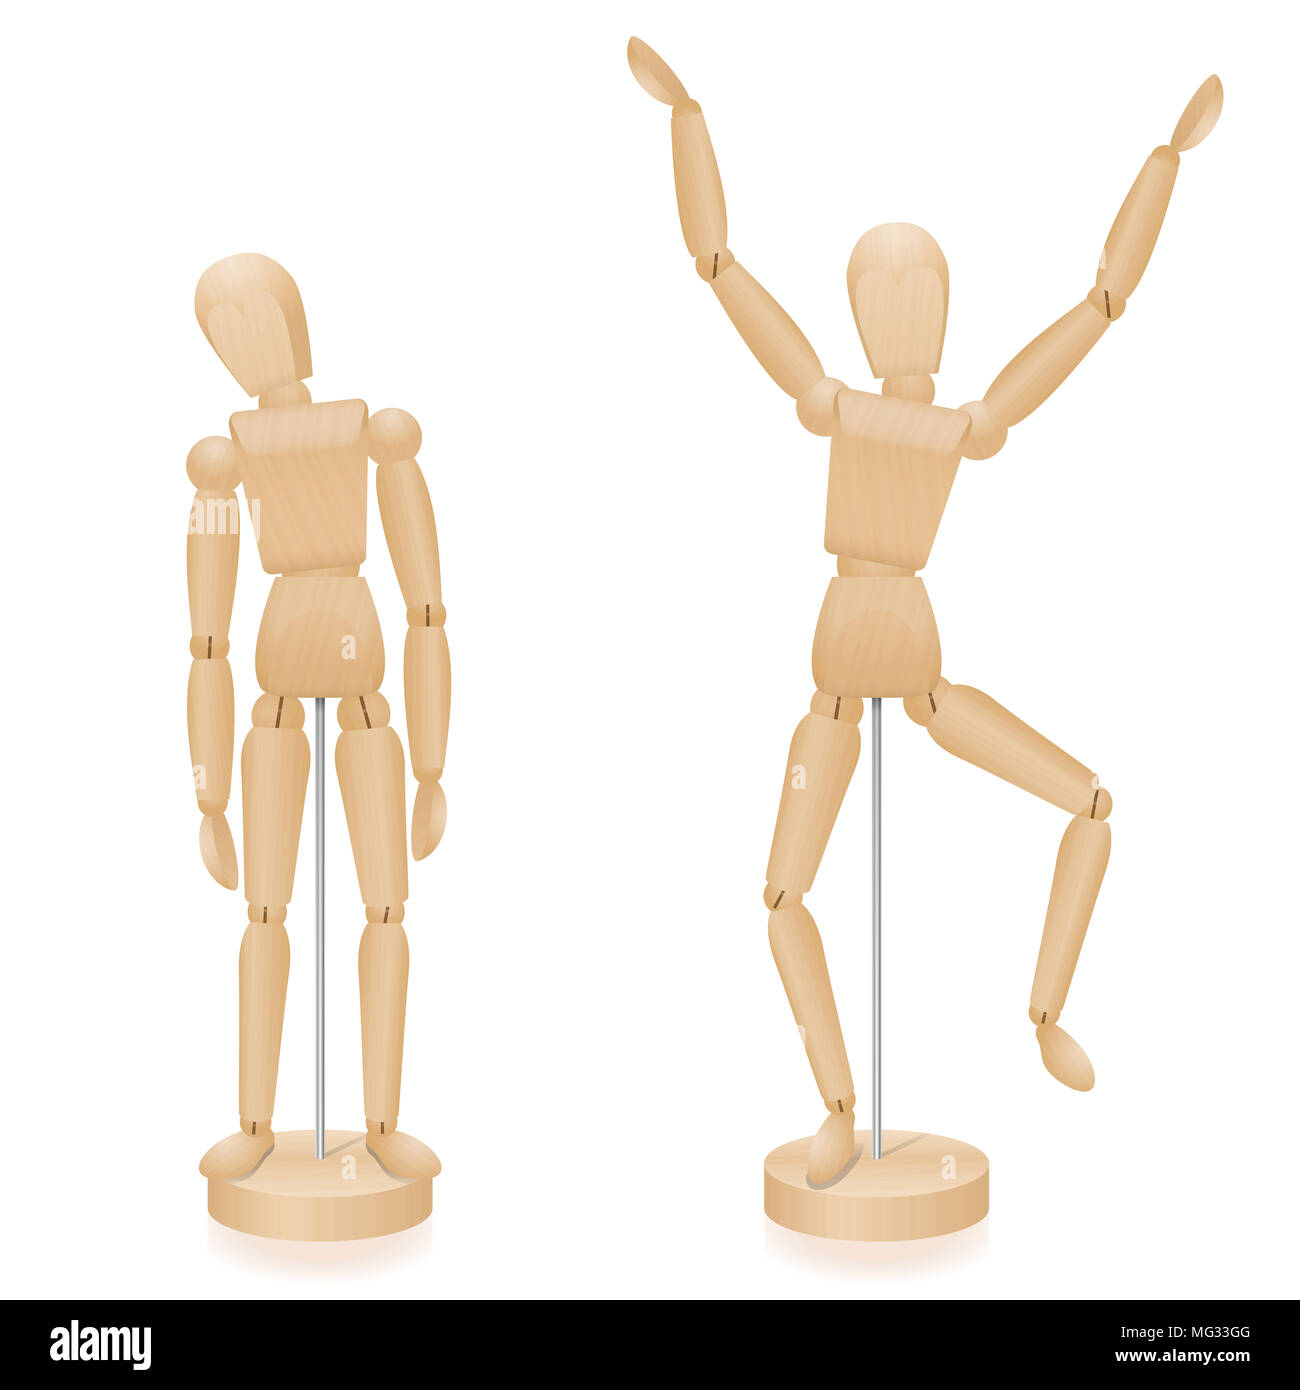 Unglücklich und glücklich, traurig und fröhlich aus Holz legen zahlen Körpersprache im Vergleich - zwei Mannequins mit typischen Körperhaltung. Stockfoto